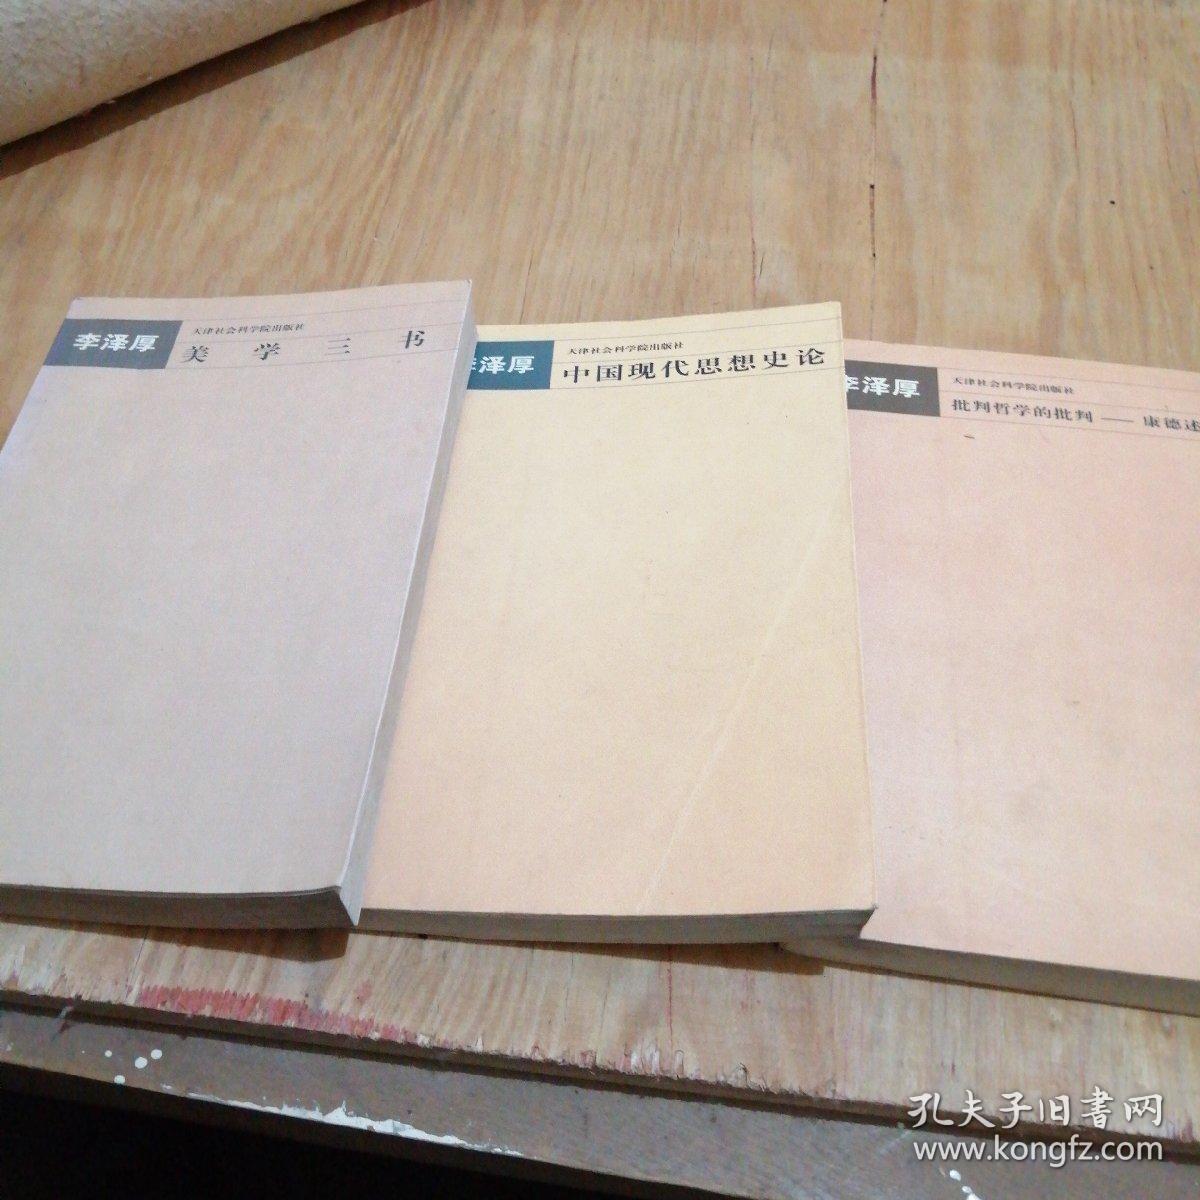 李泽厚美学三书，中国现代思想史论，批判哲学的批判康德述评（三册合售）